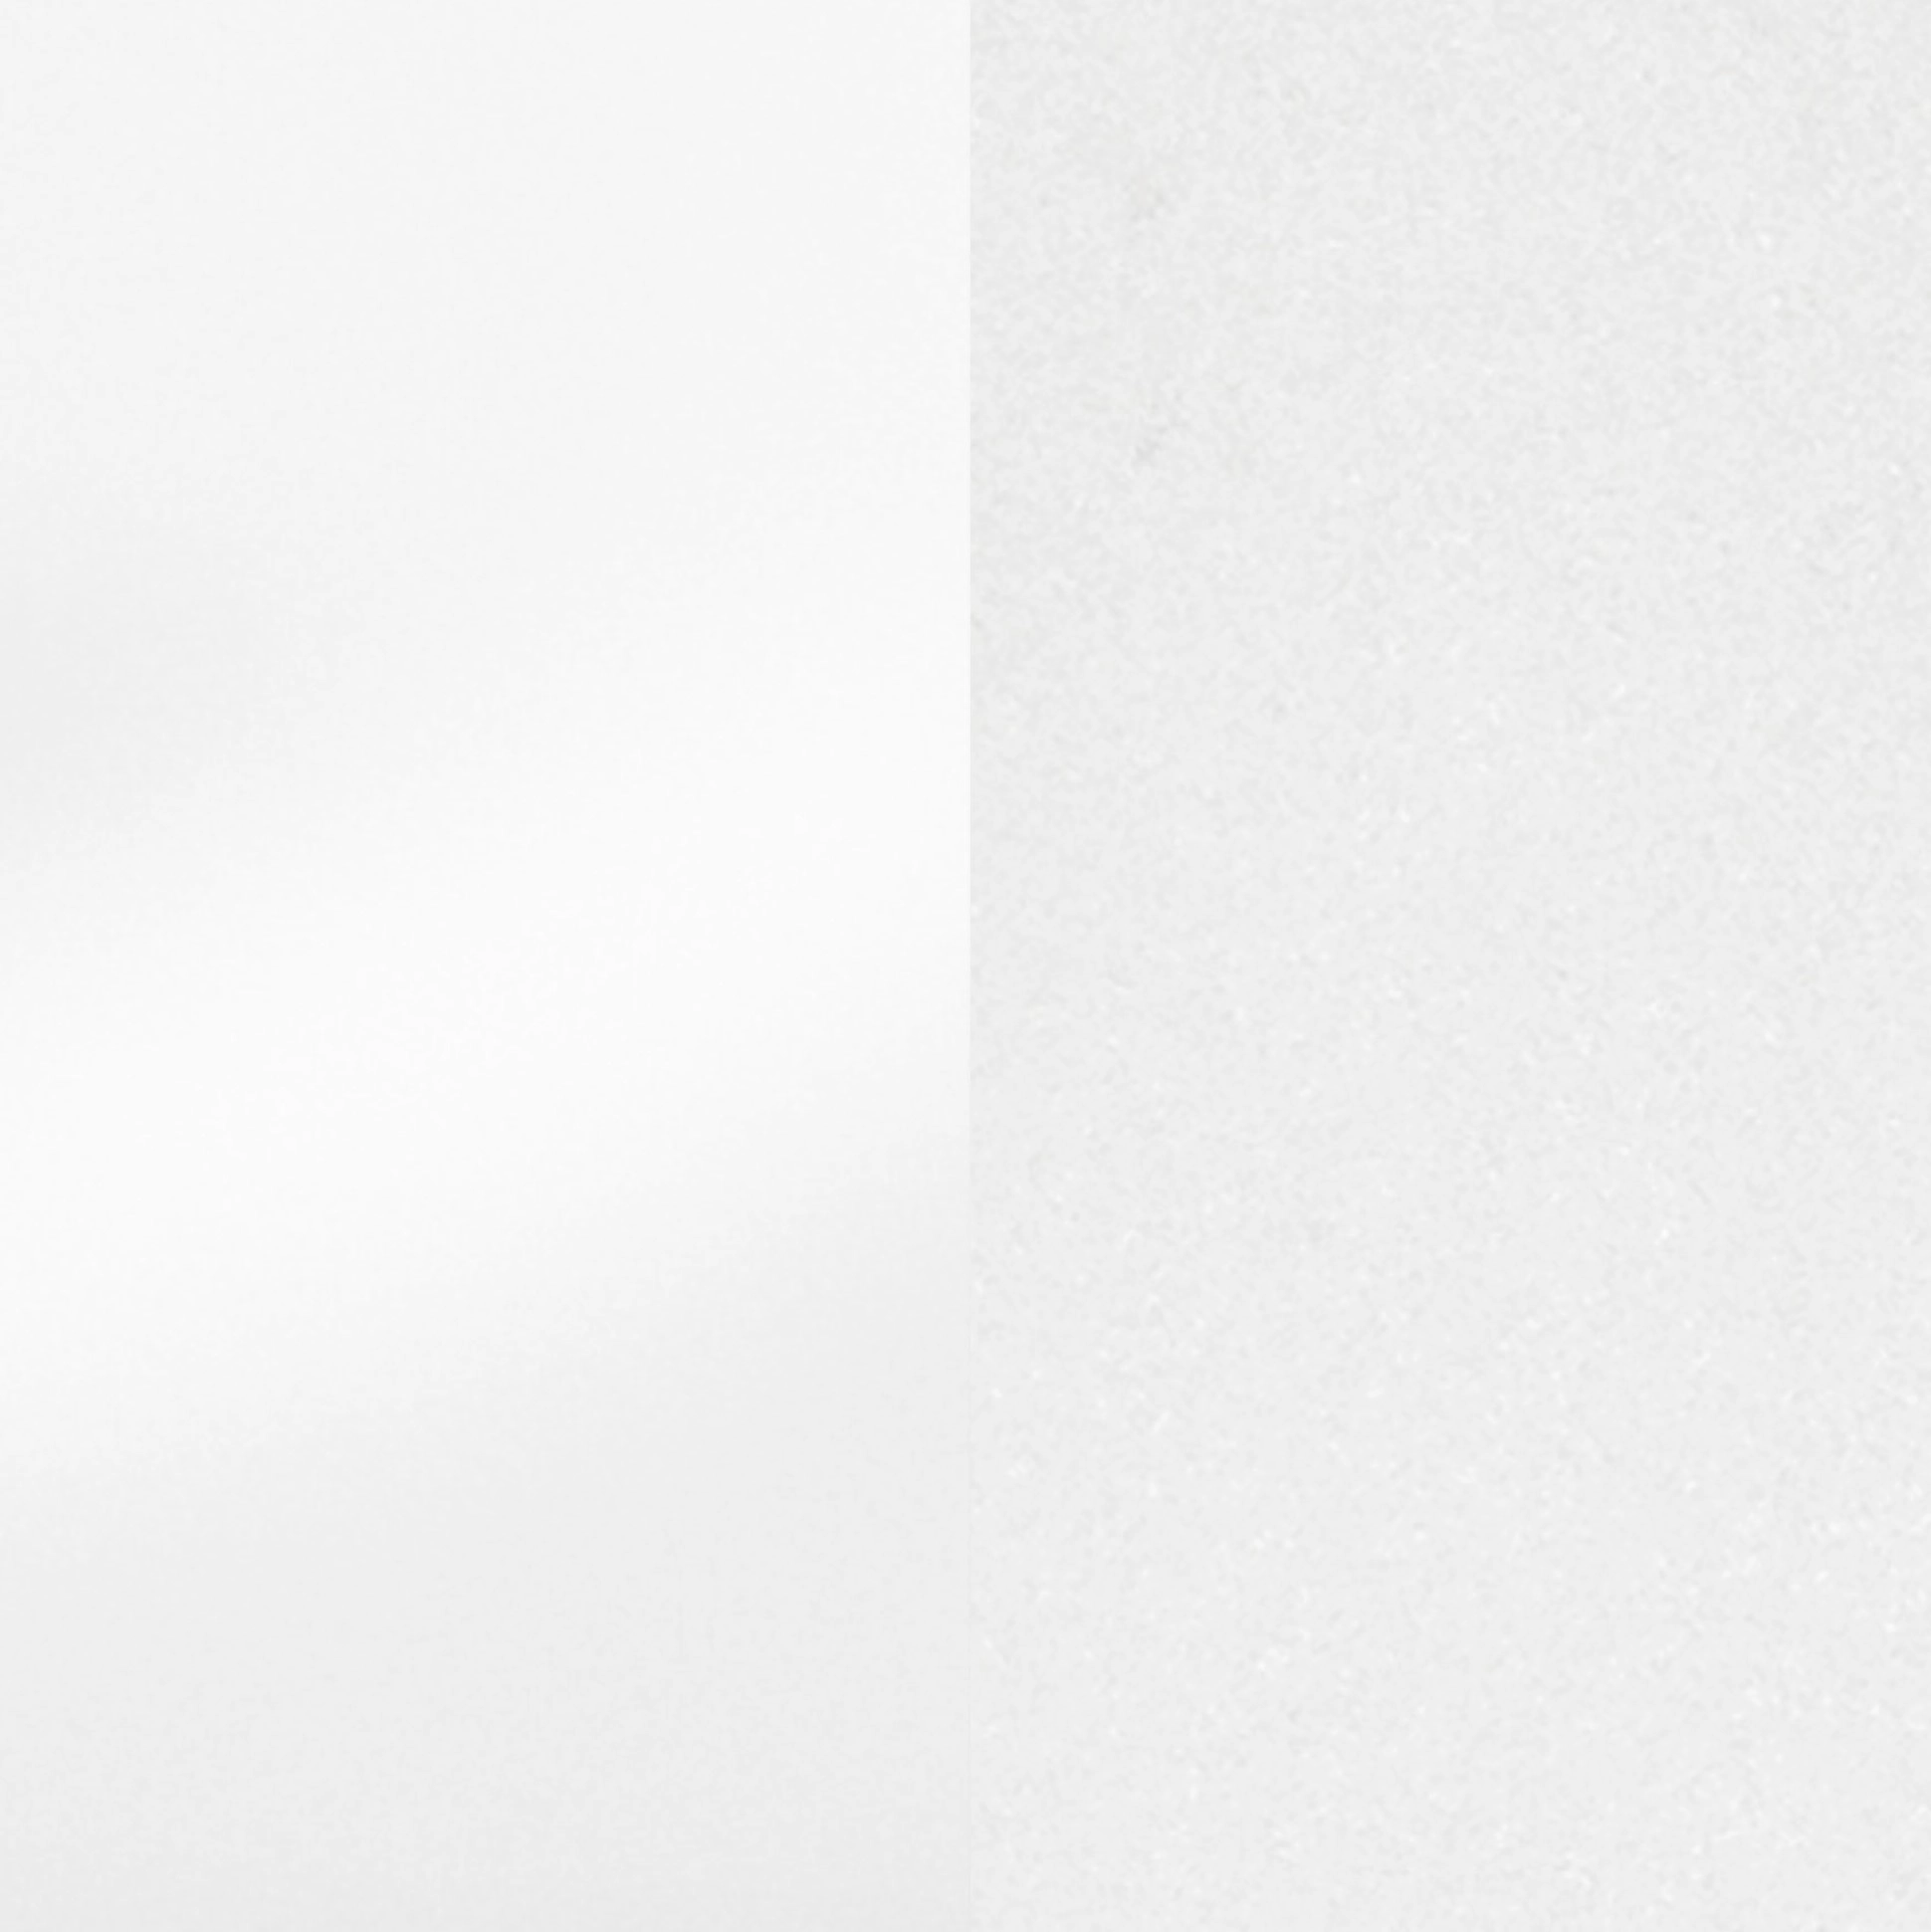 Held Möbel Spülenunterschrank Mailand Weiß/Weiß OBI Hochglanz kaufen bei cm 110